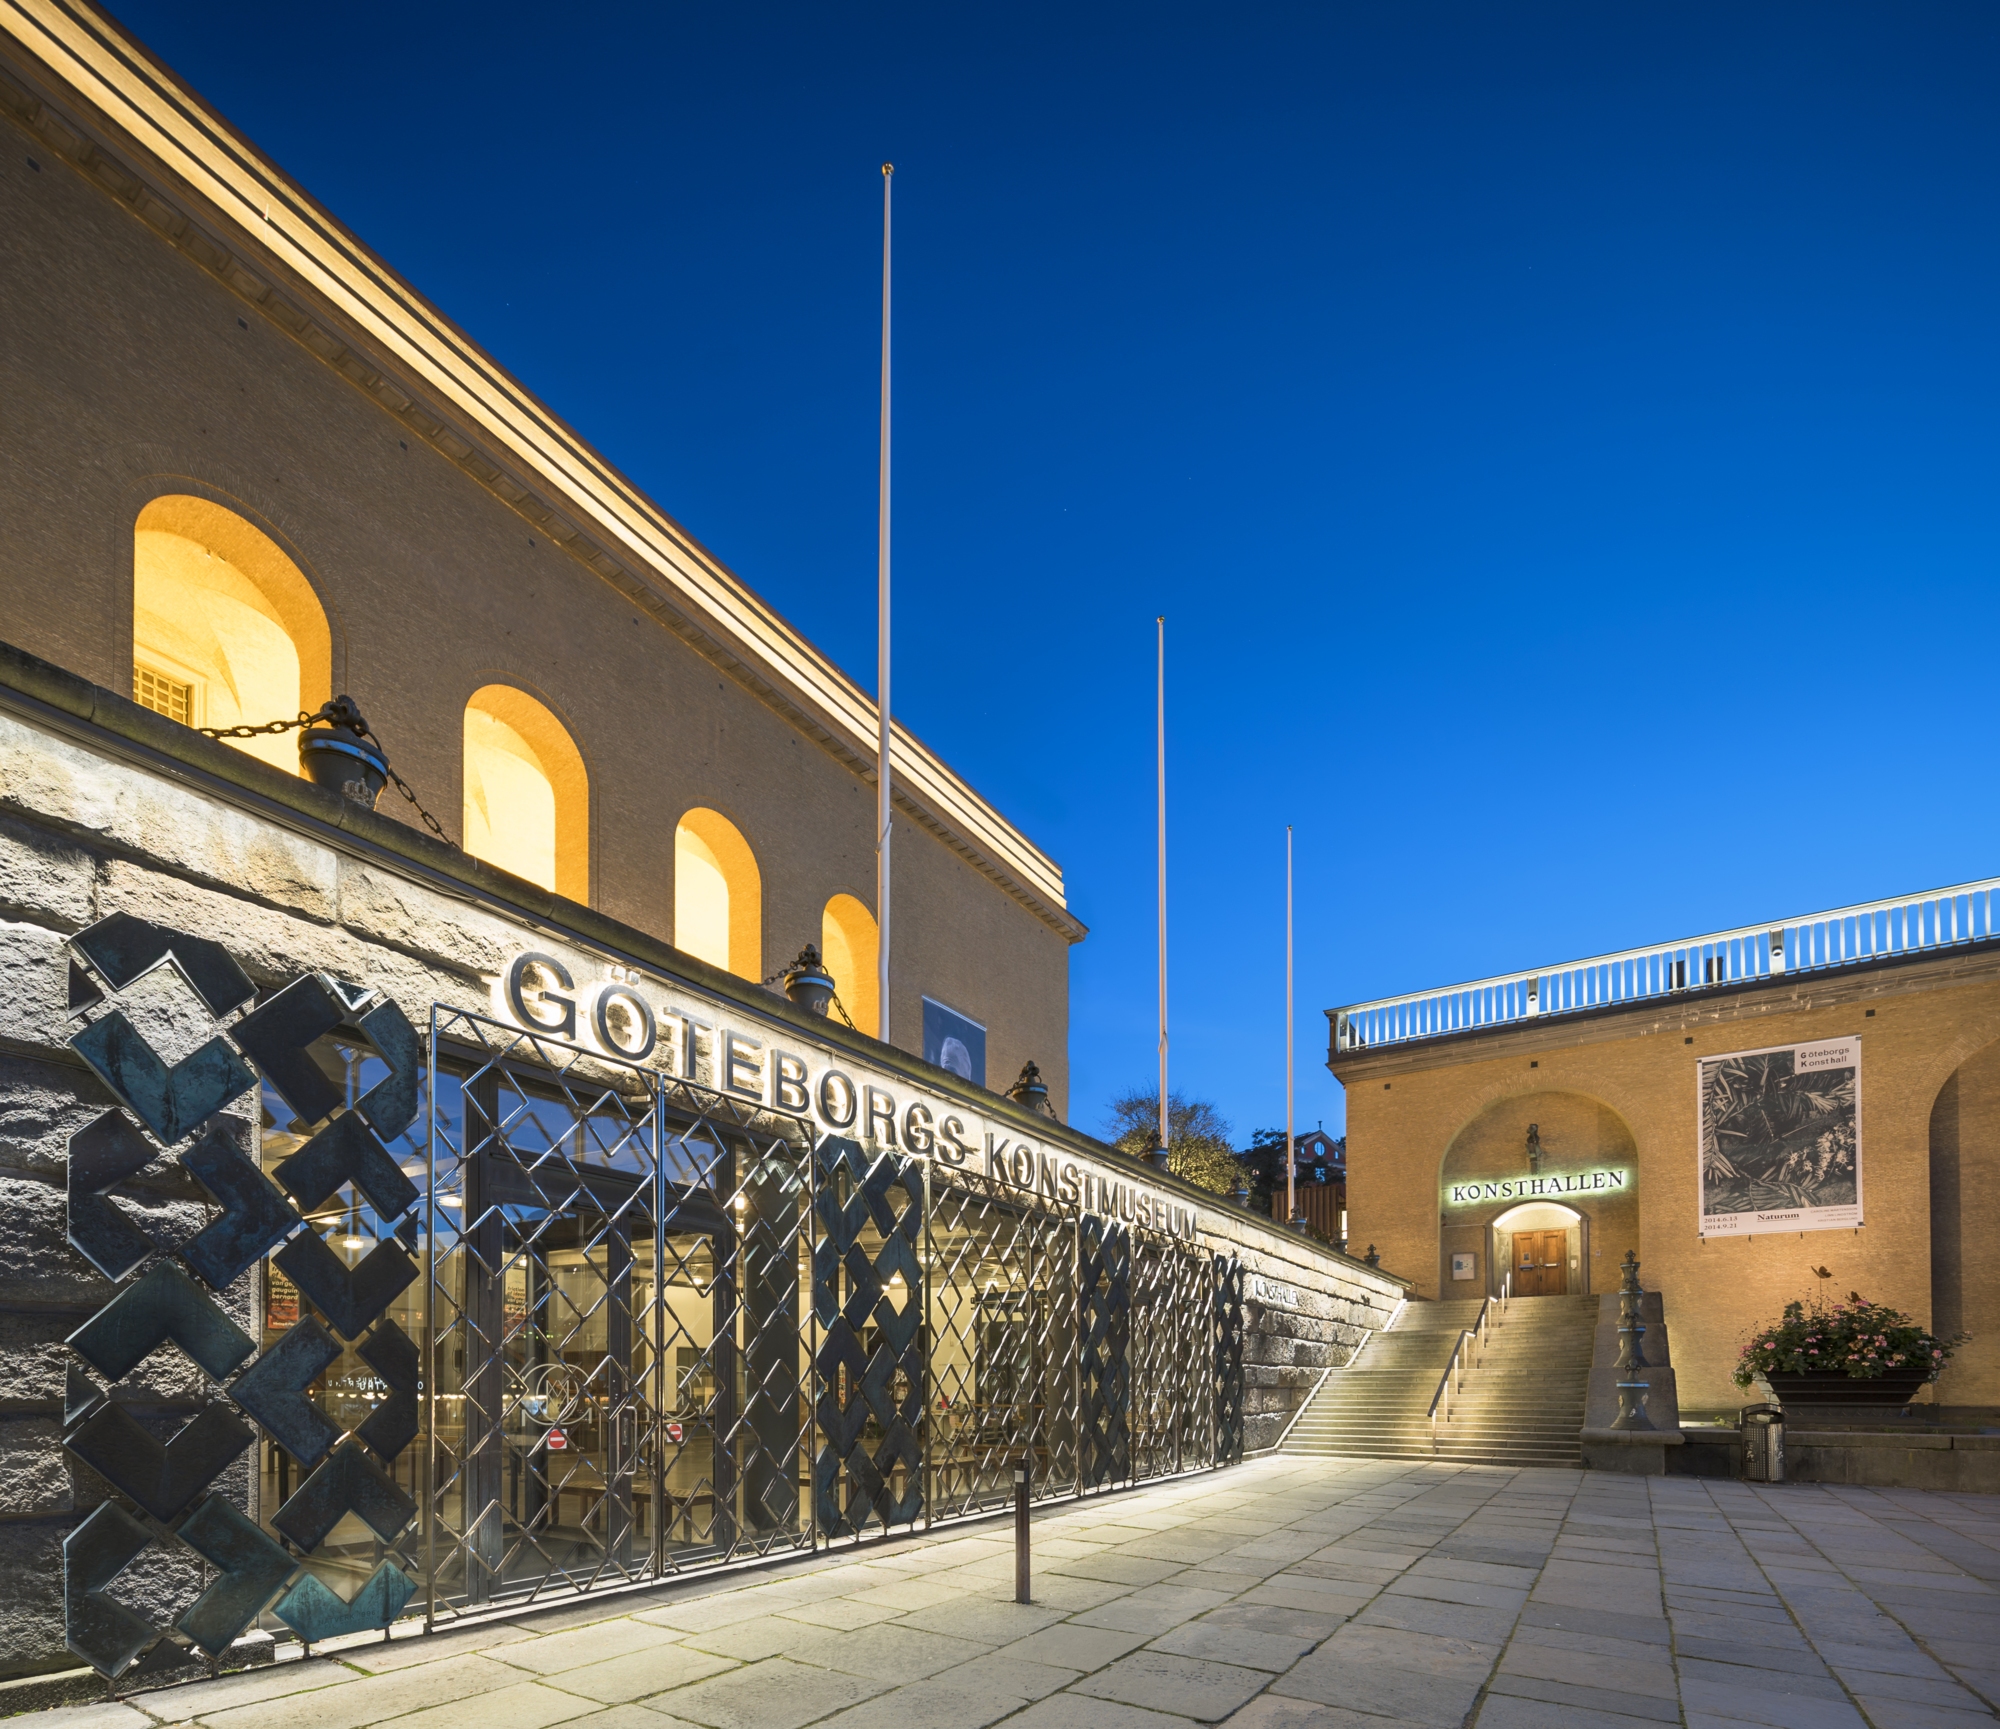 Göteborgs konstmuseum och Konsthallen upplyst under kvällstid